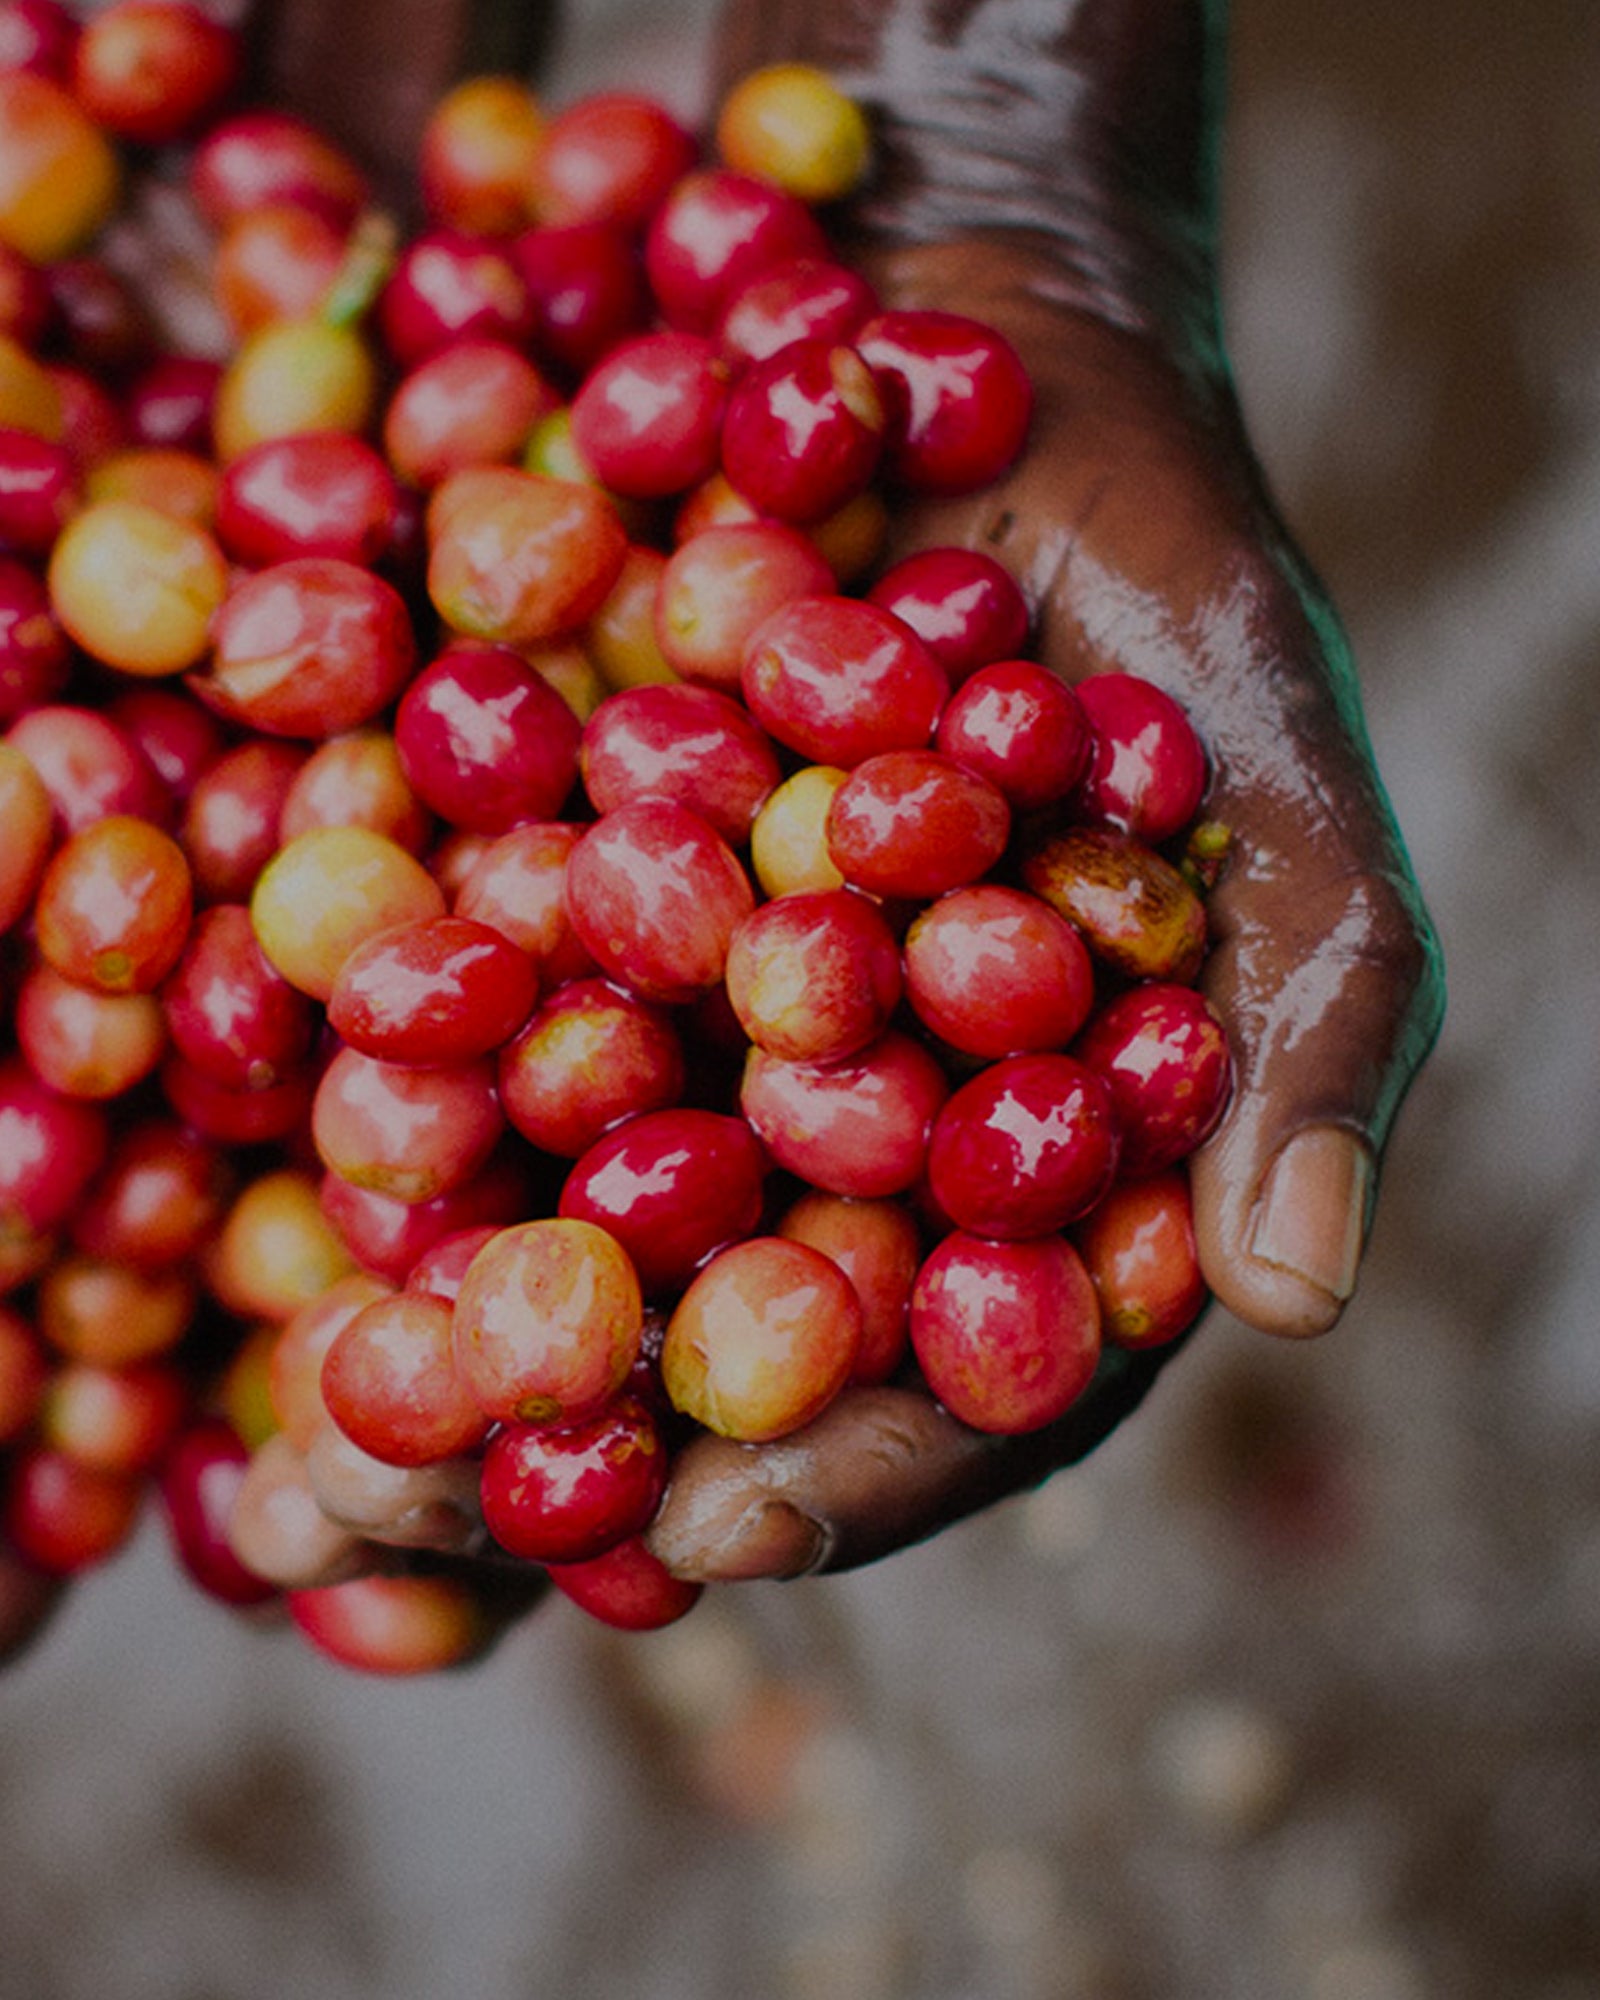 A Taste of Burundi, Stamp Act Coffee Tasting Workshop